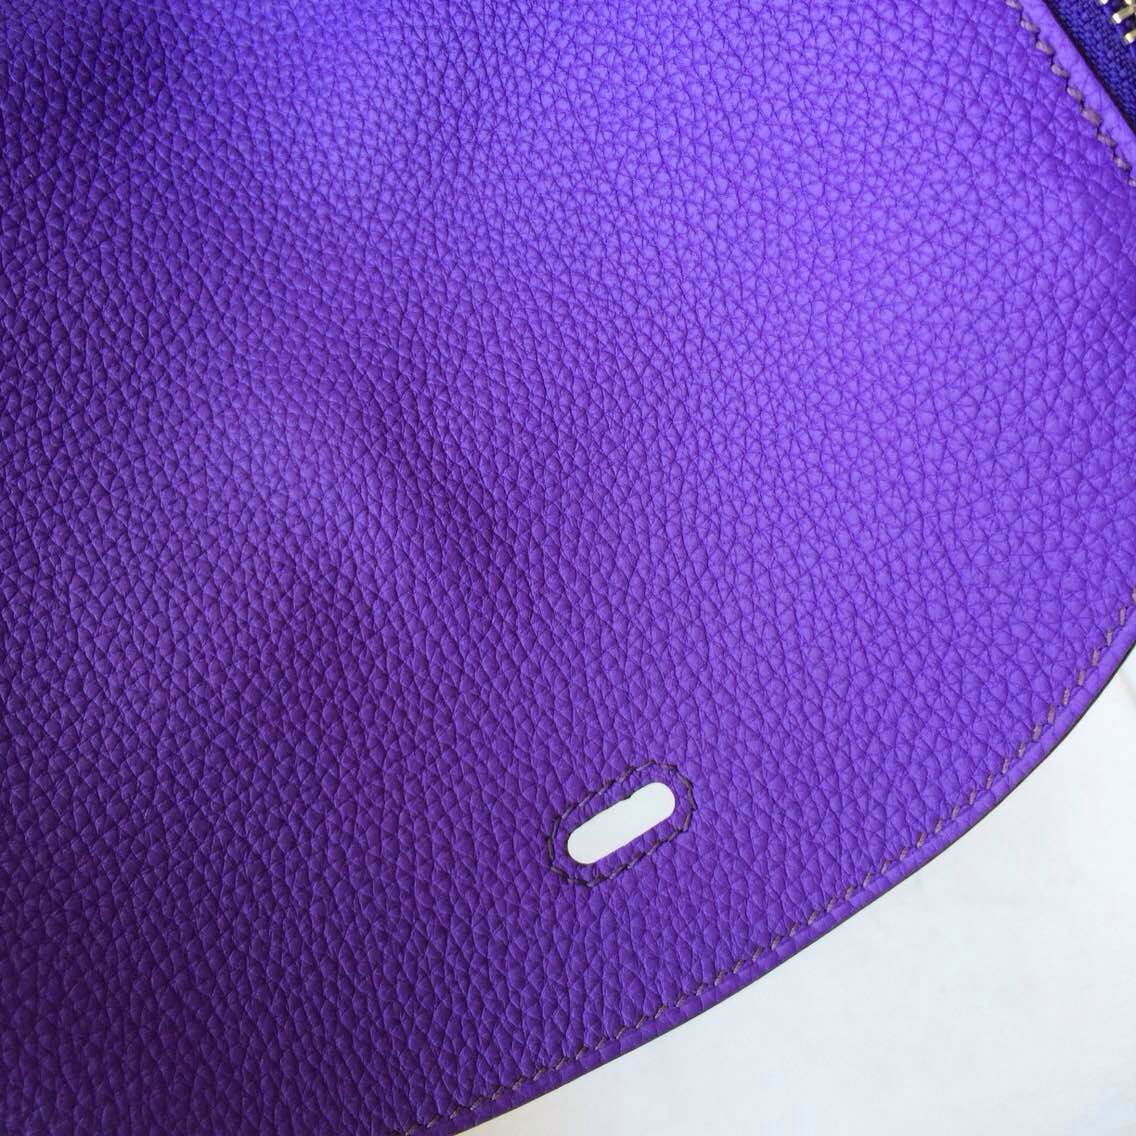 30cm Hermes Lindy Bag Ultraviolet France Togo Leather Silver Hardware